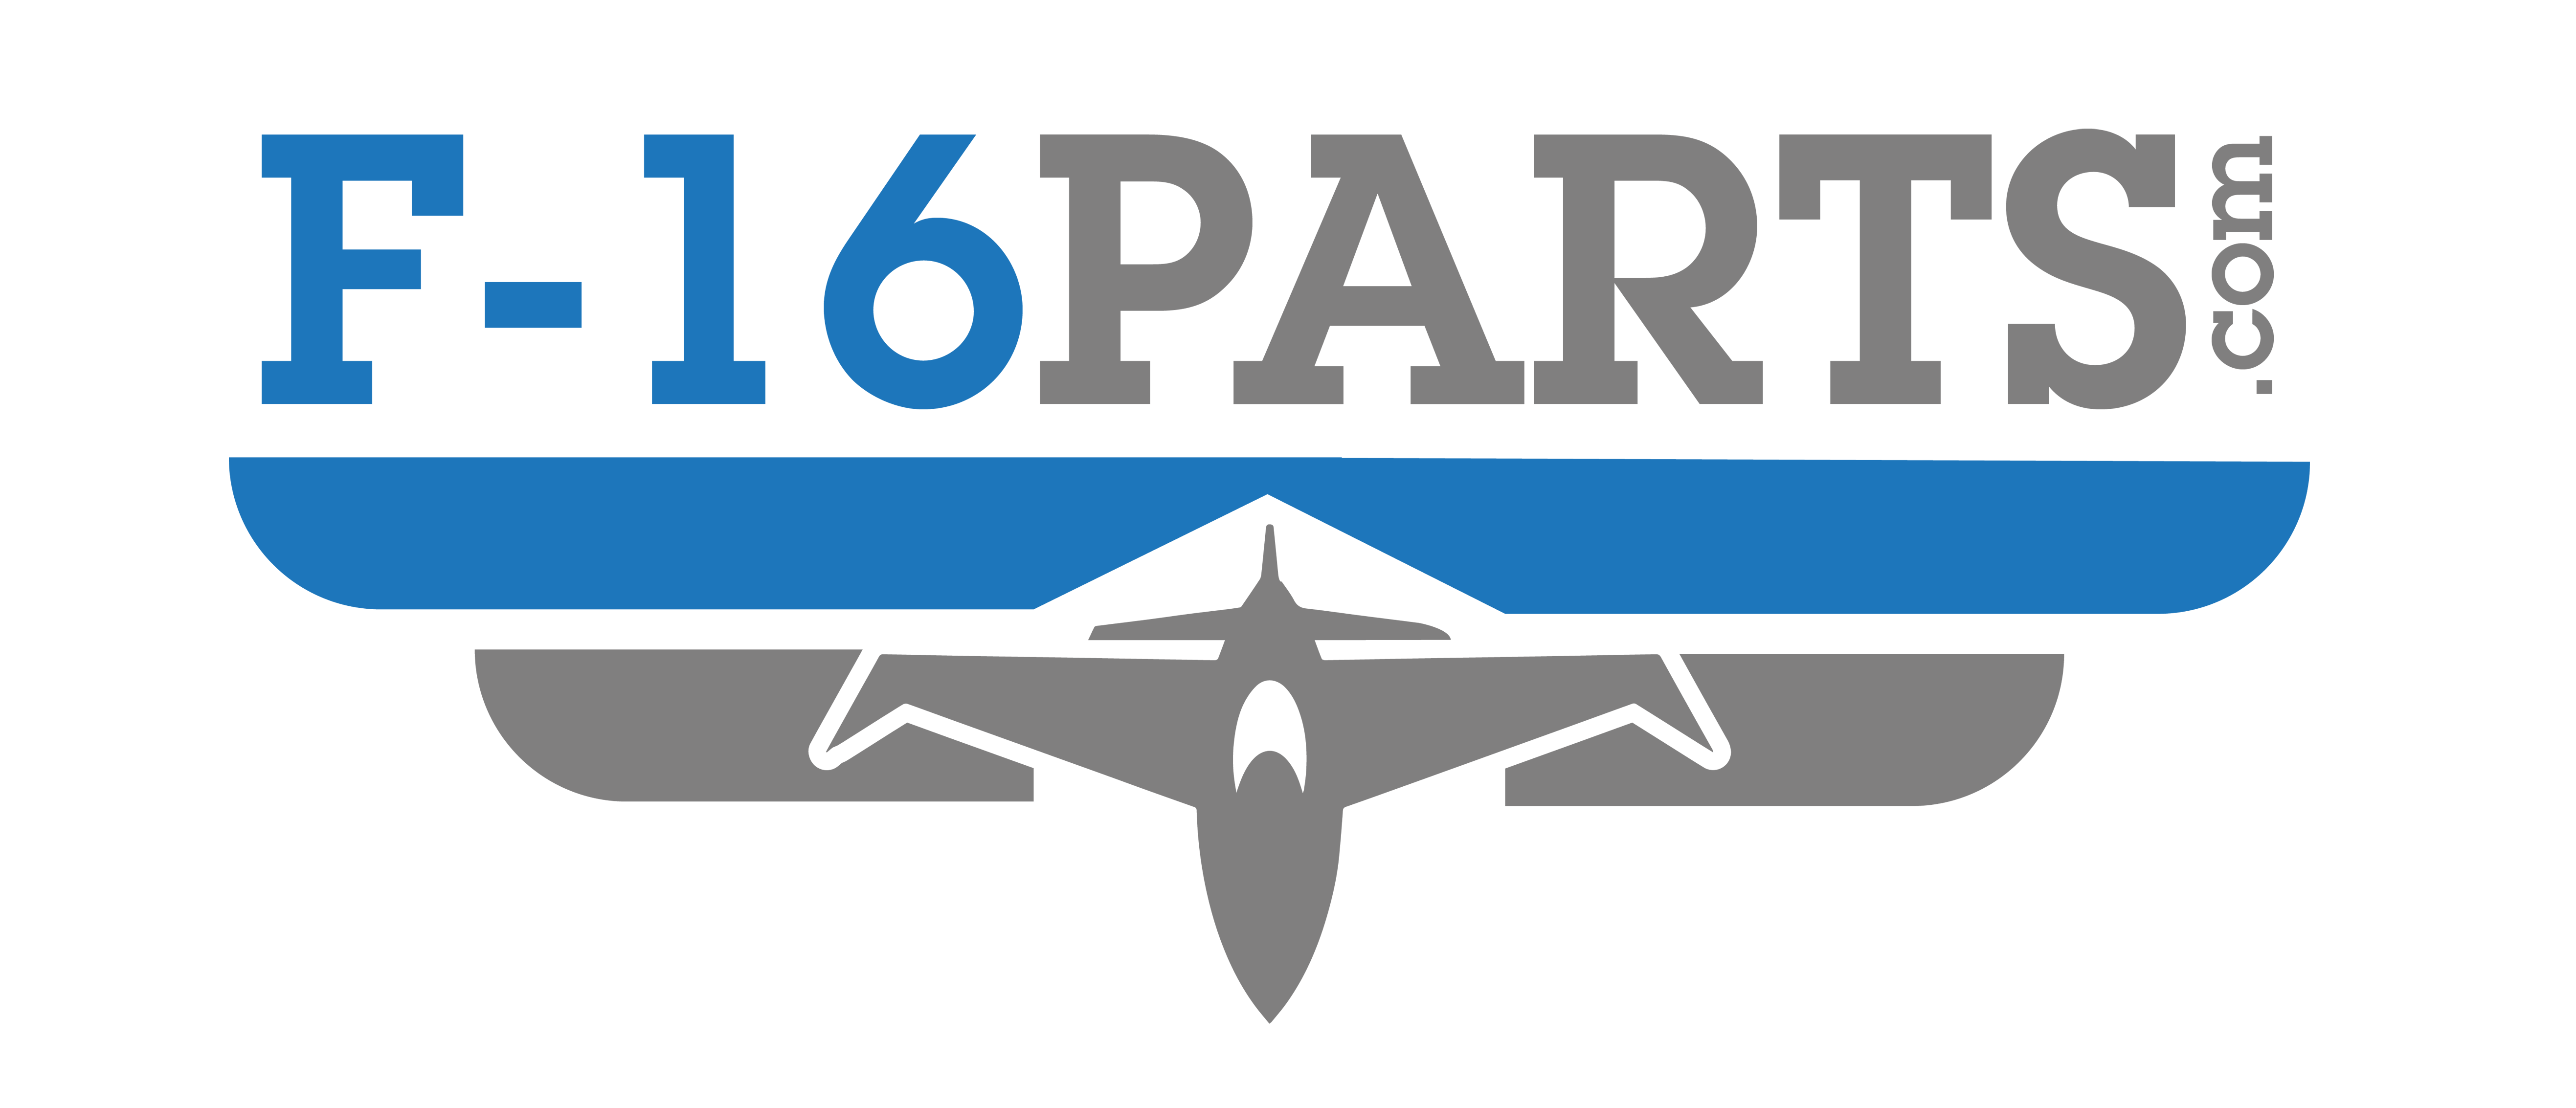 F-16 Parts